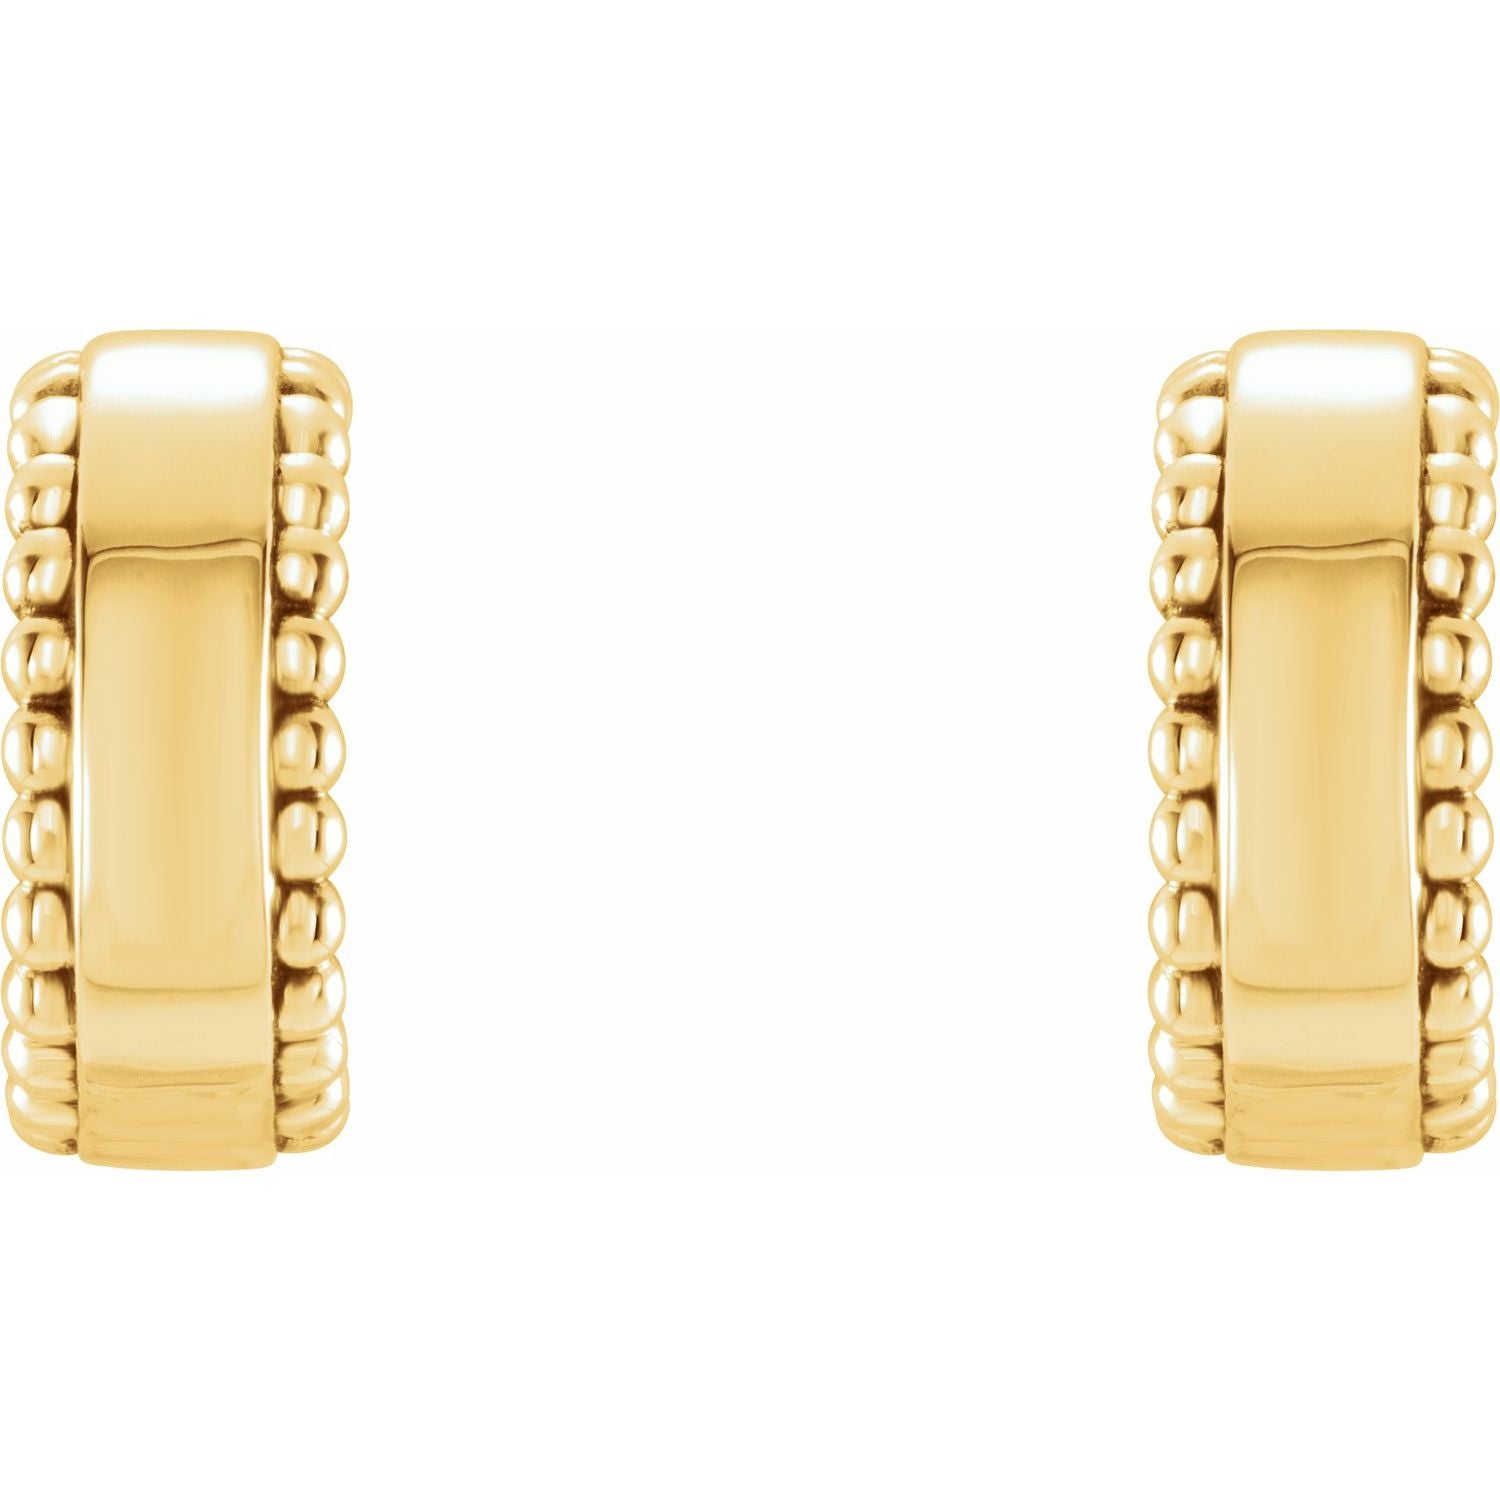 14K Gold Beaded Hoop Earrings